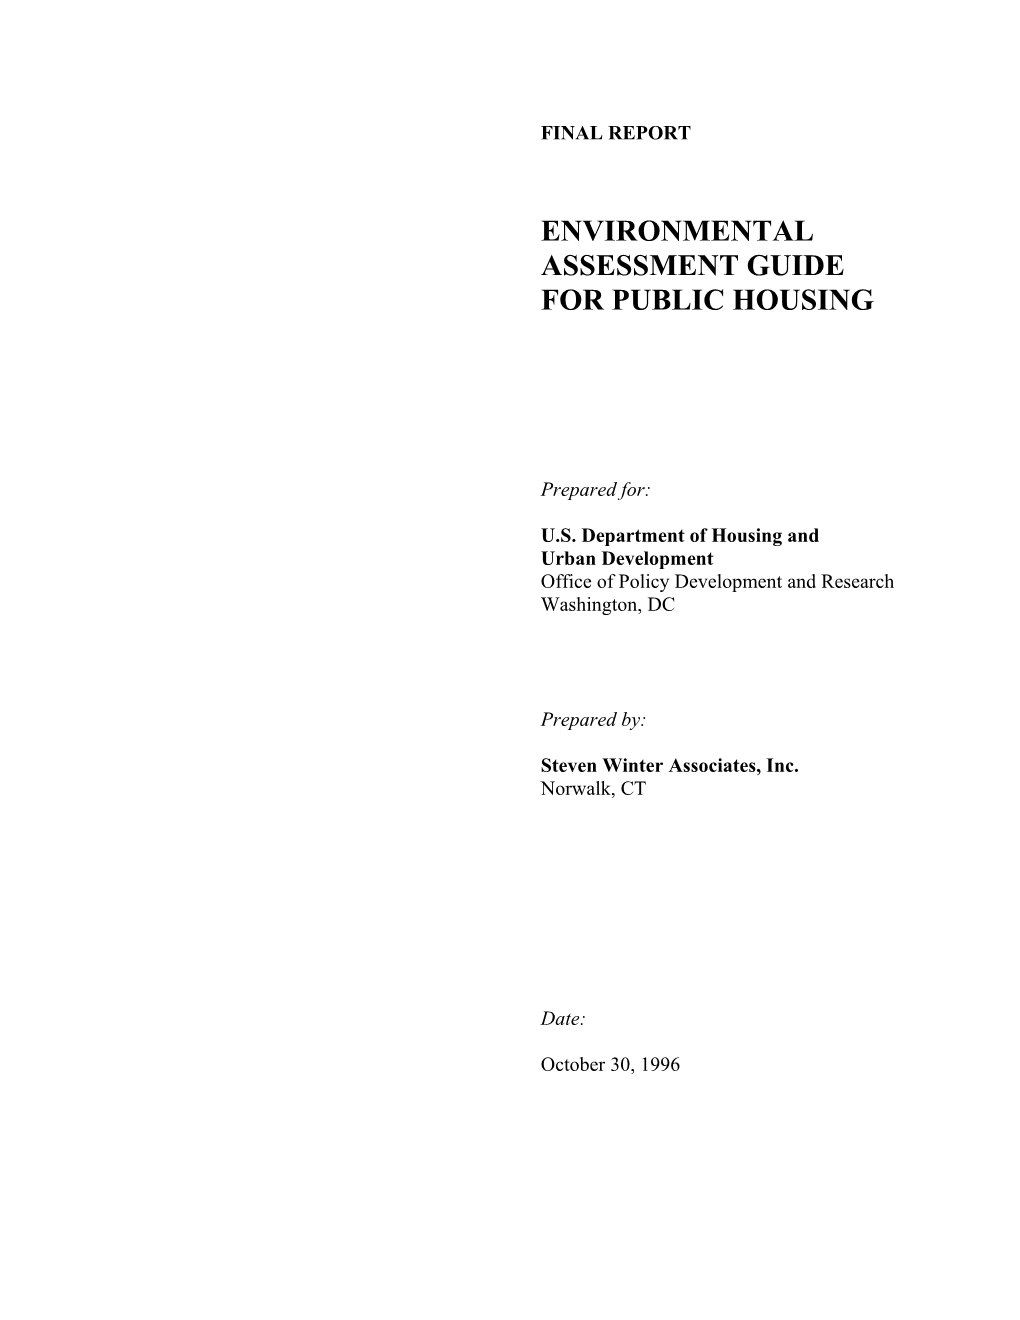 Environmental Assessment Guide for Public Housing